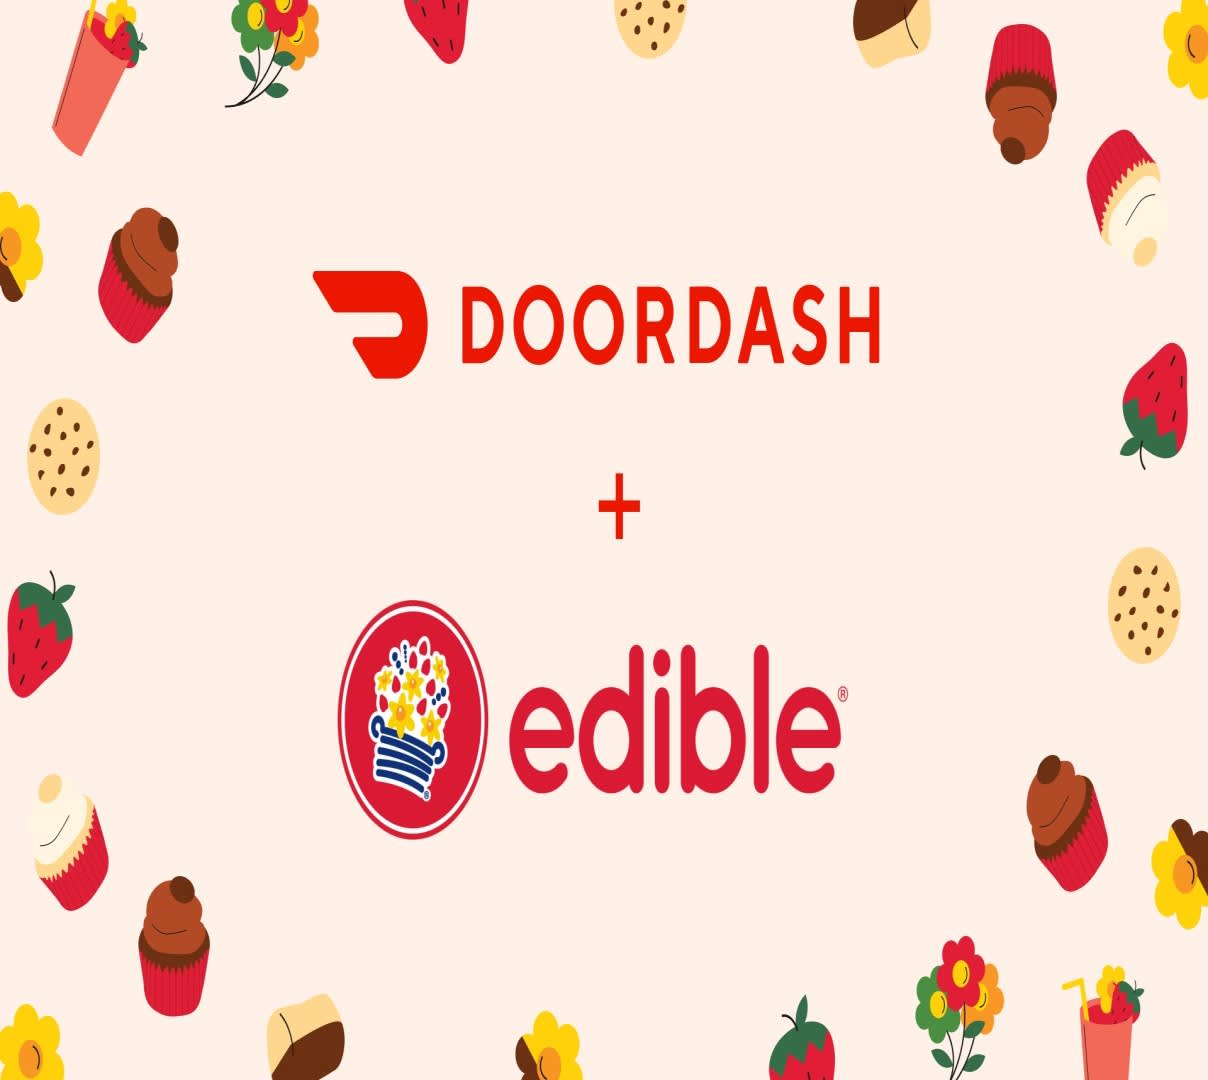 DoorDash and Edible Arrangements